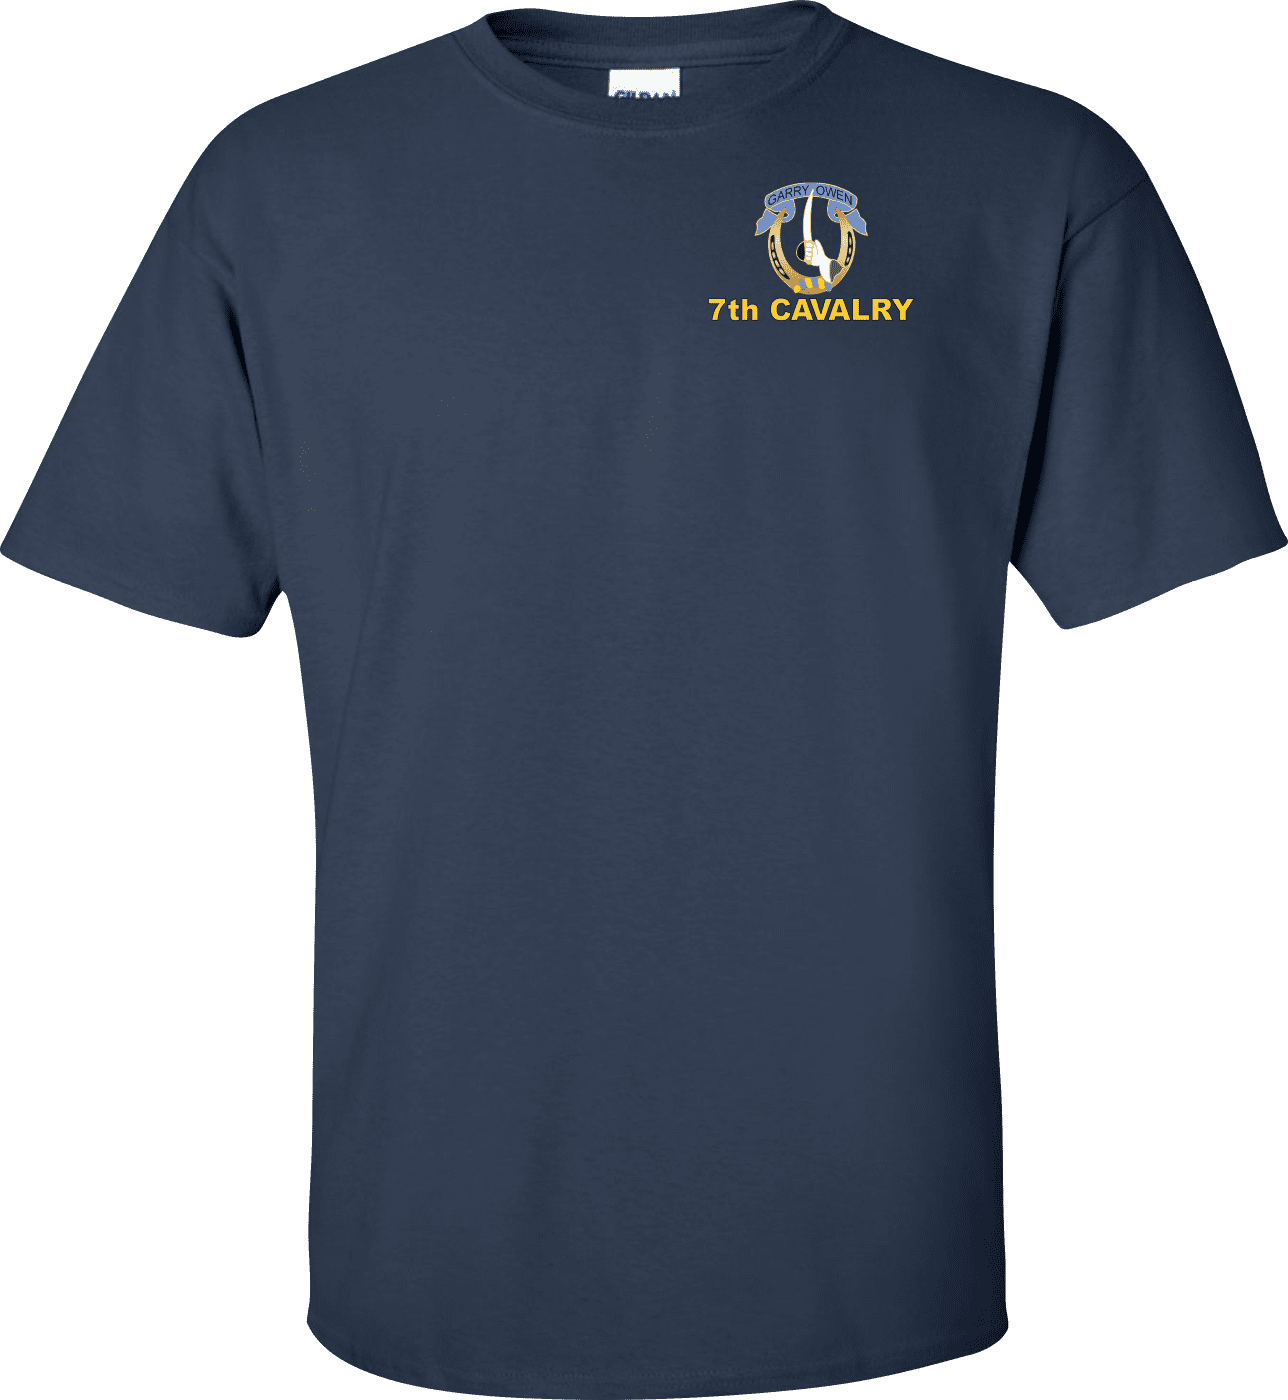 U.S. Army 7th Cavalry Regiment T-shirt - Walmart.com